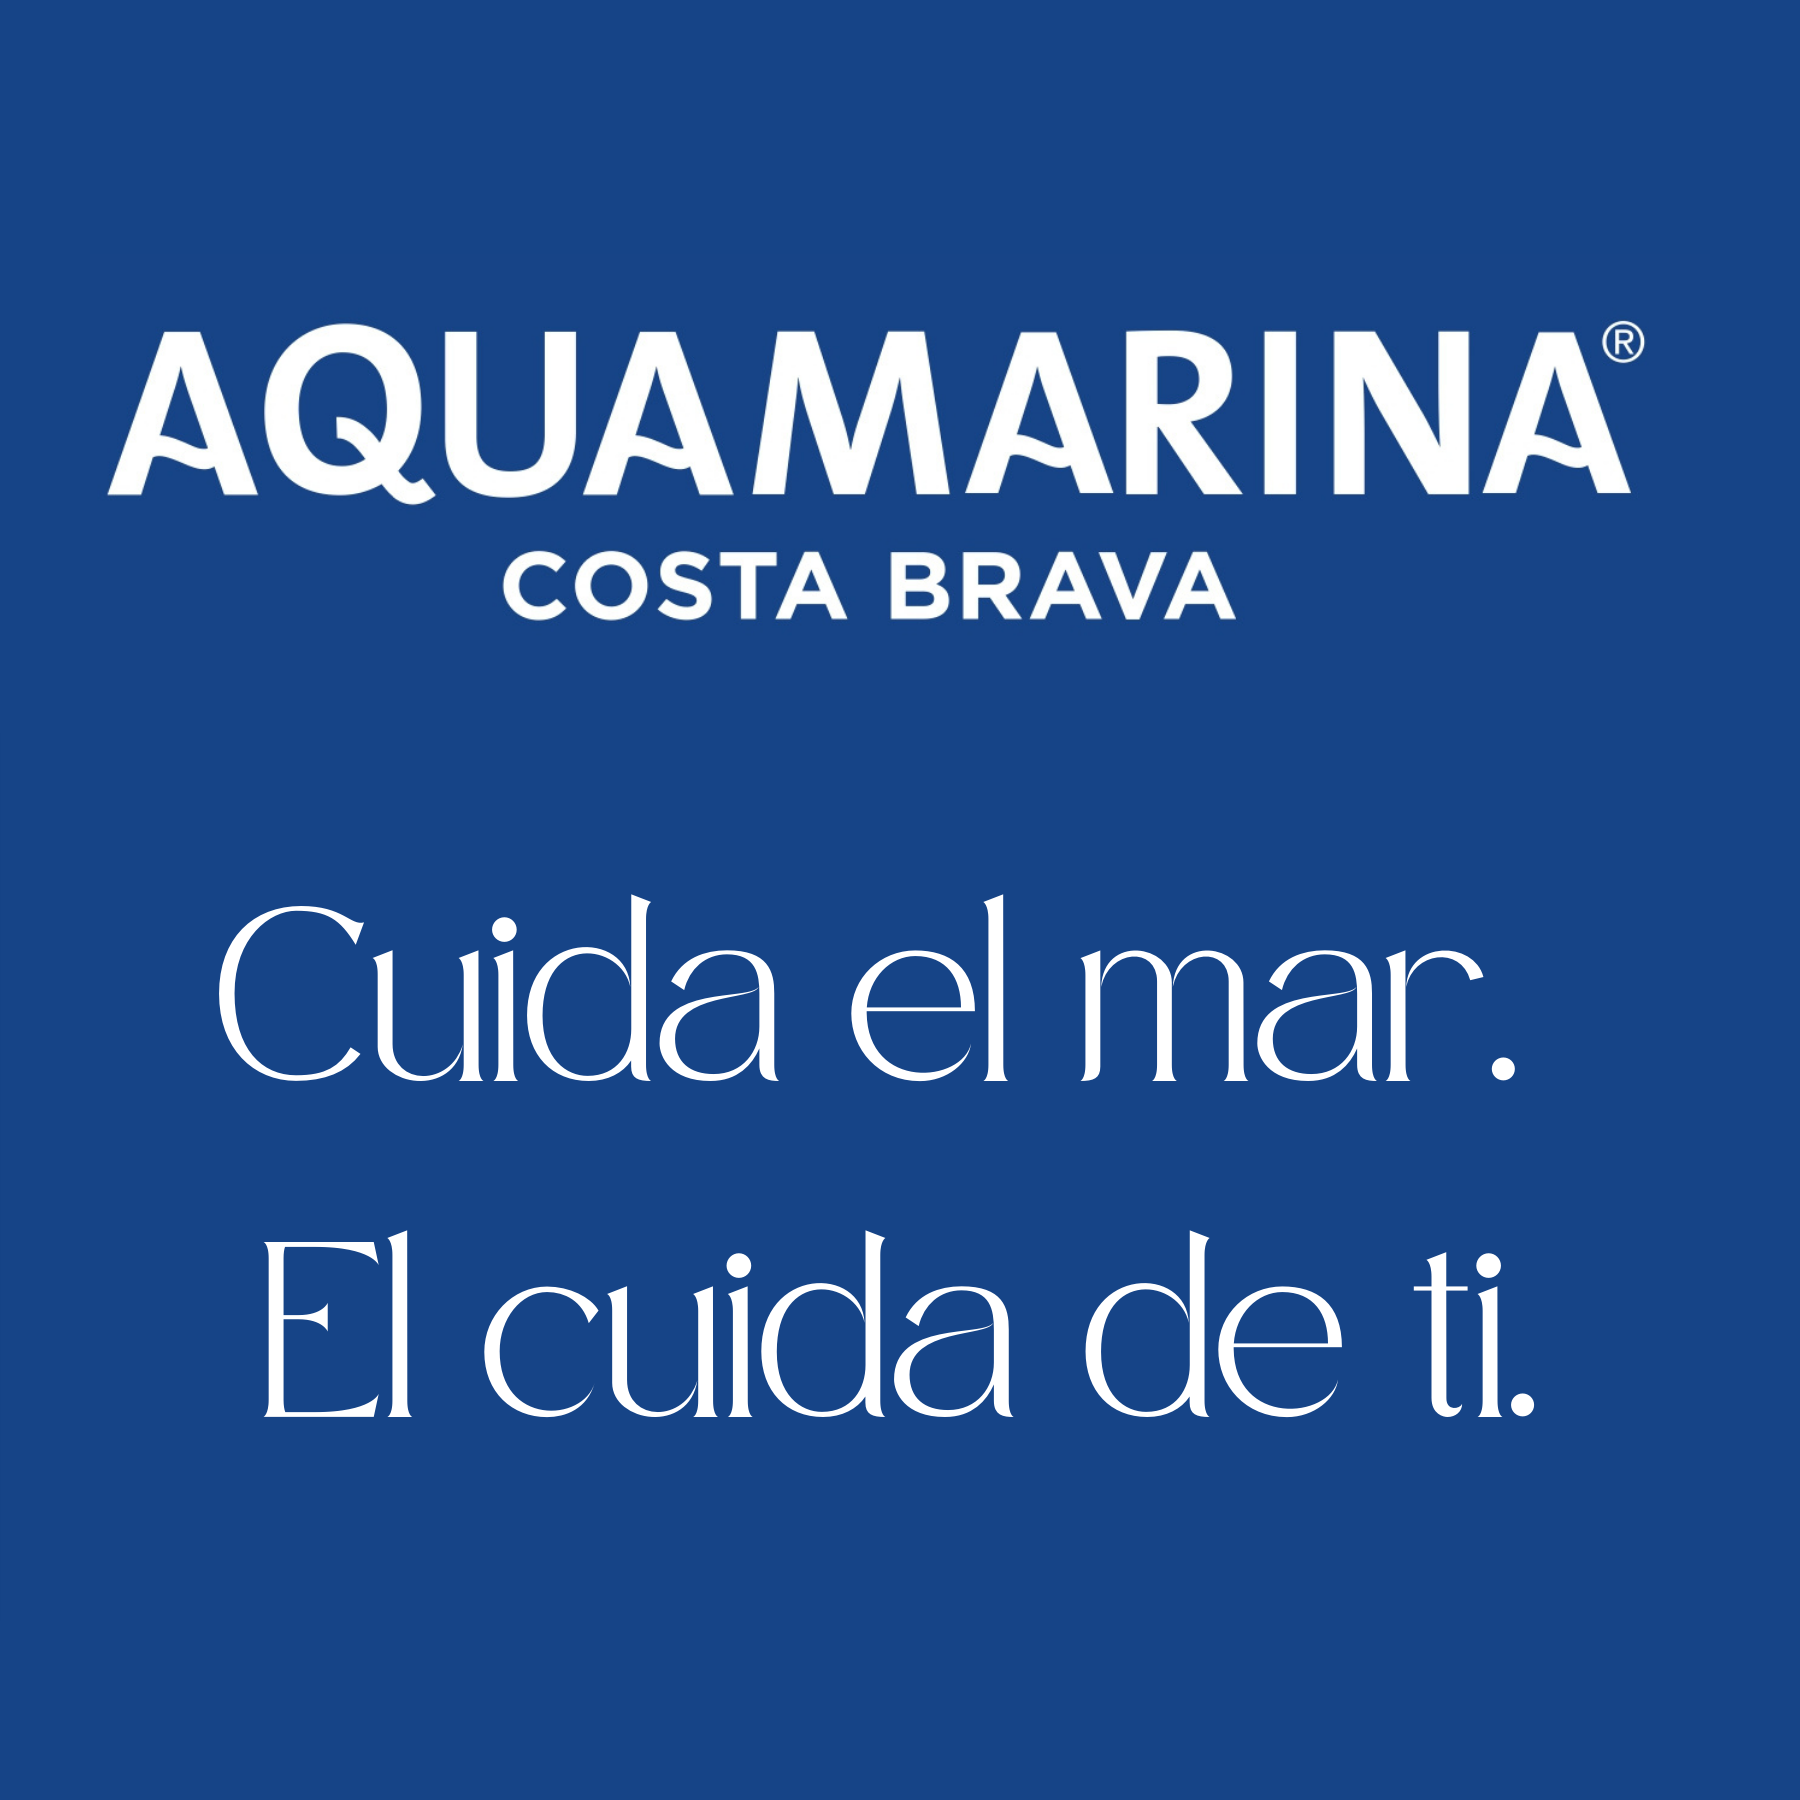 AQUAMARINA Costa Brava. Agua marina Hipertónica 5 Litros Bag In Box. Microfiltrada y sin aditivos. Contiene más de 75 minerales y oligoelementos.